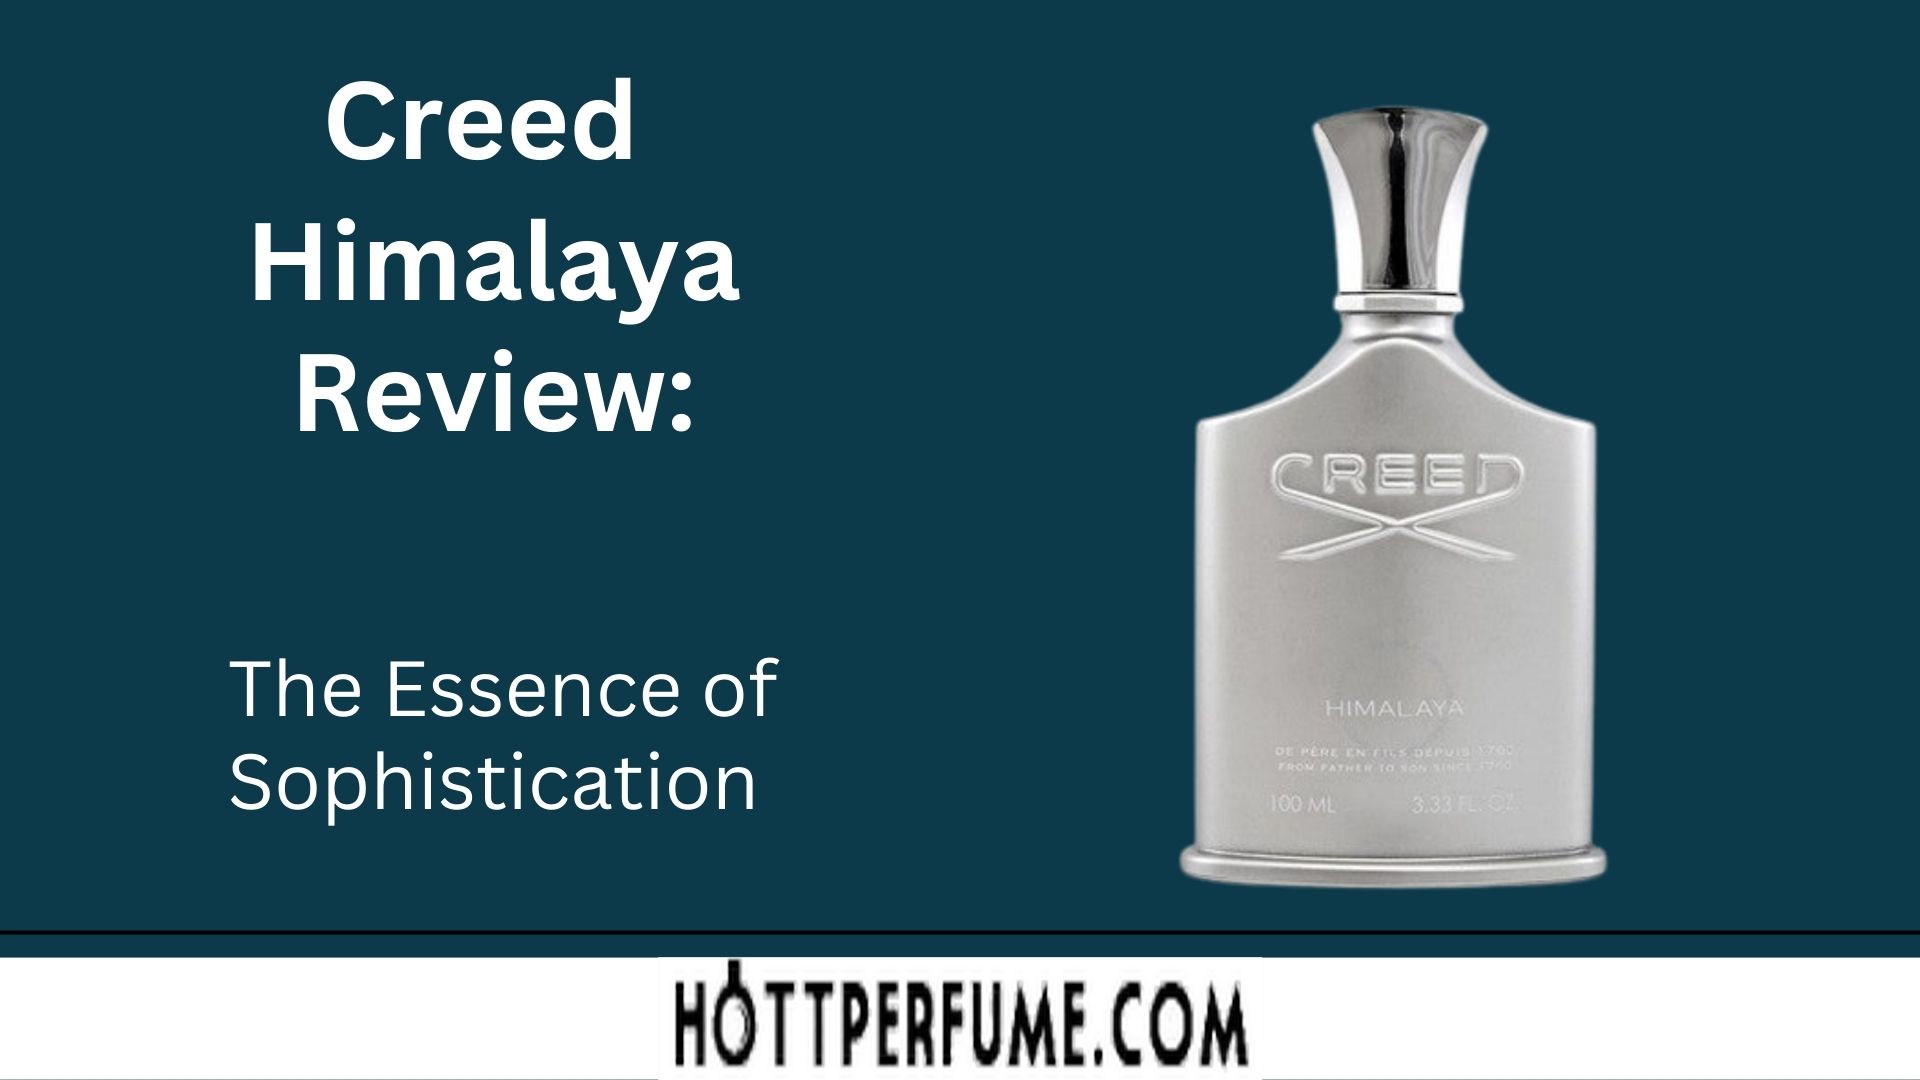 Creed Himalaya Review